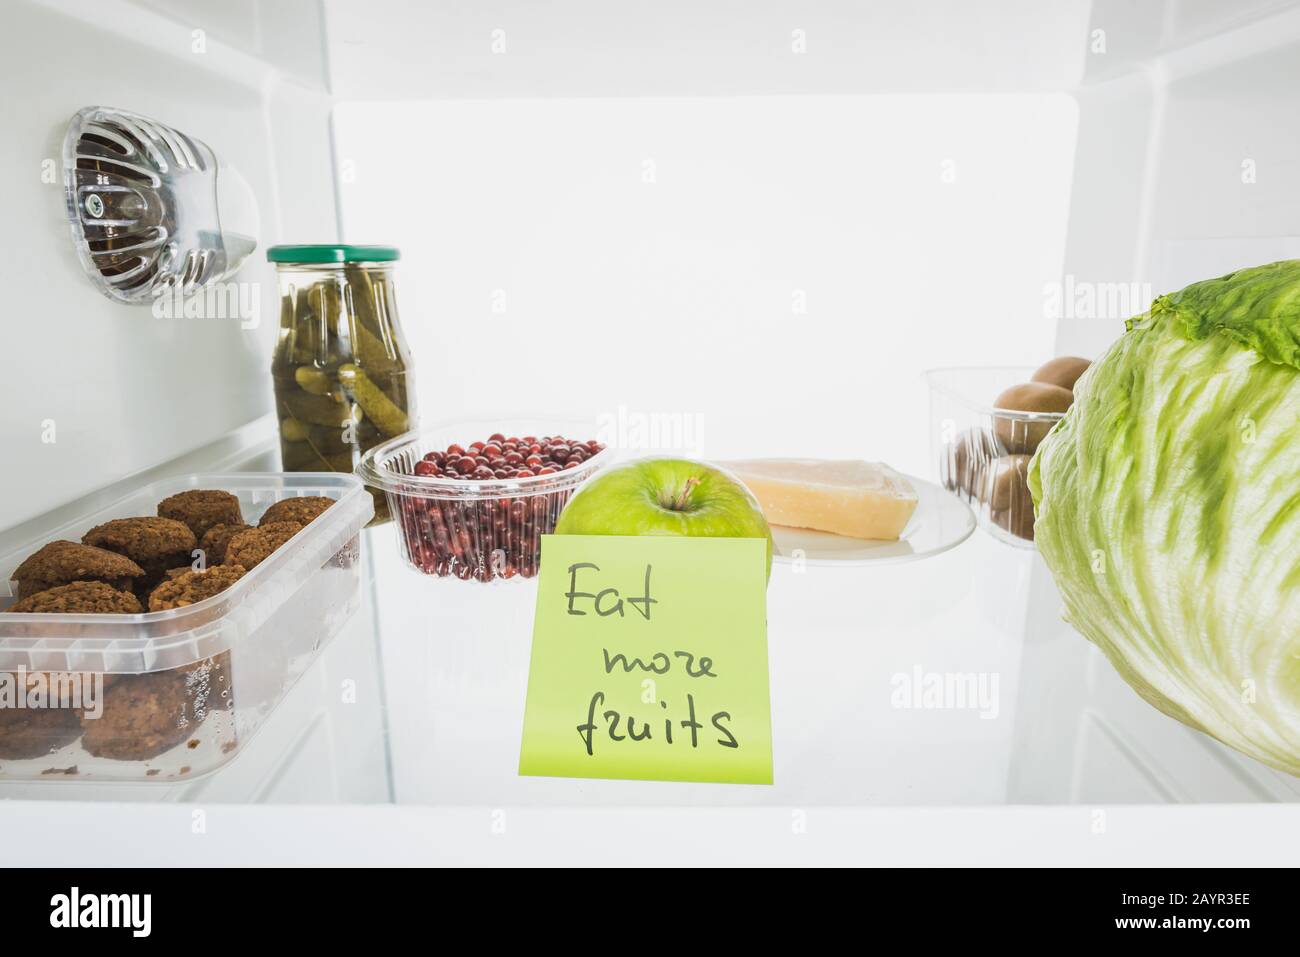 Carta con mangiare più frutta lettering in frigo shelf con cibo isolato su bianco, immagine stock Foto Stock